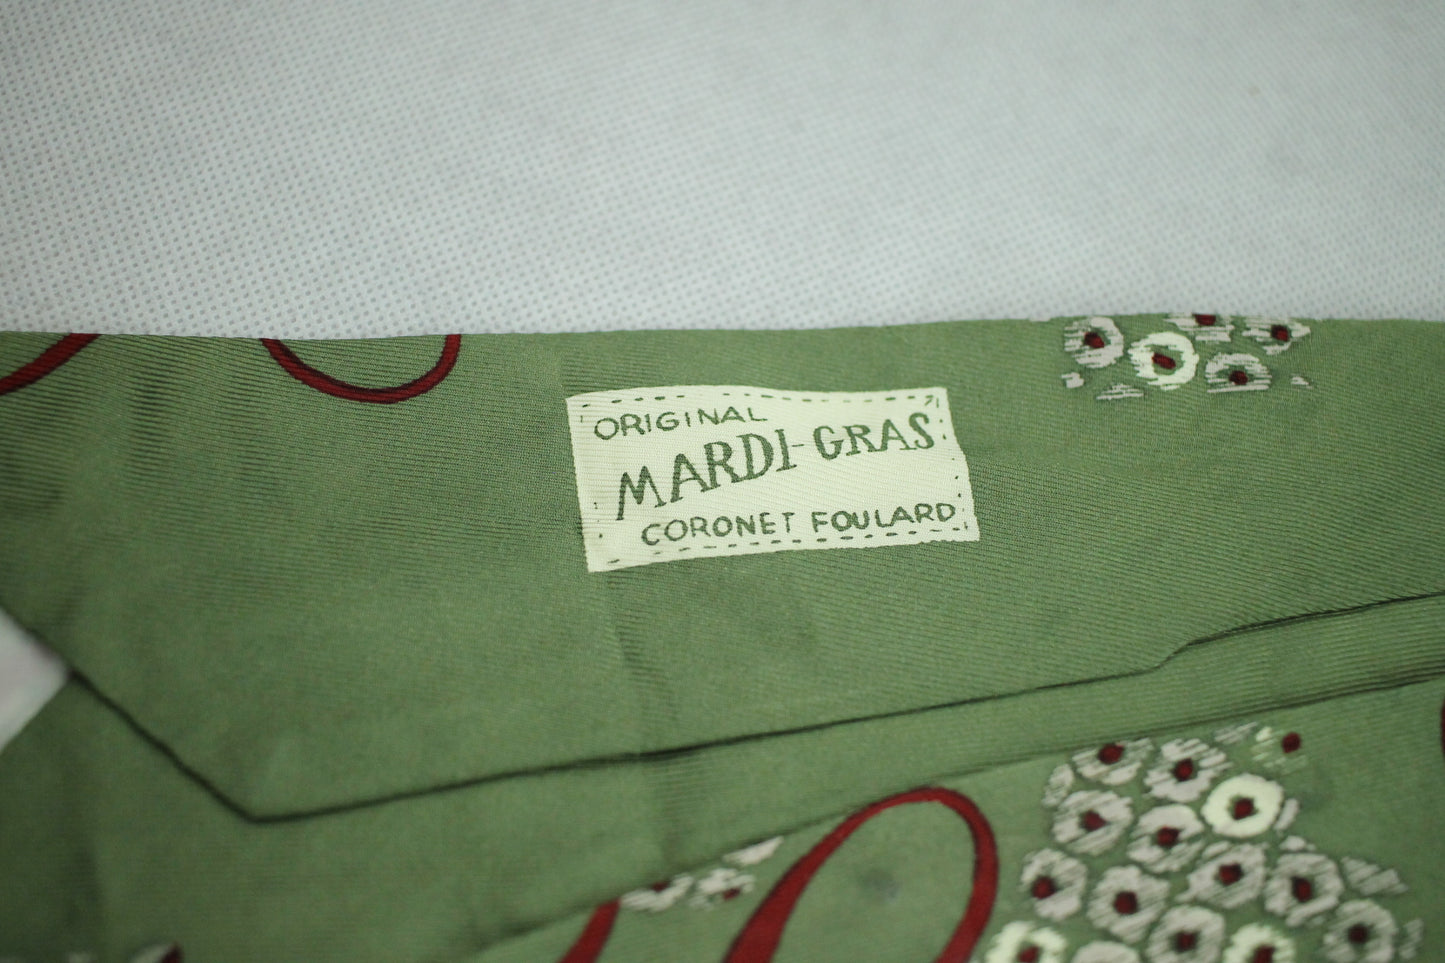 Vintage 1940s/50s Coronet Foulard Mardi Gras Green Burgundy Belly Warmer Swing Tie